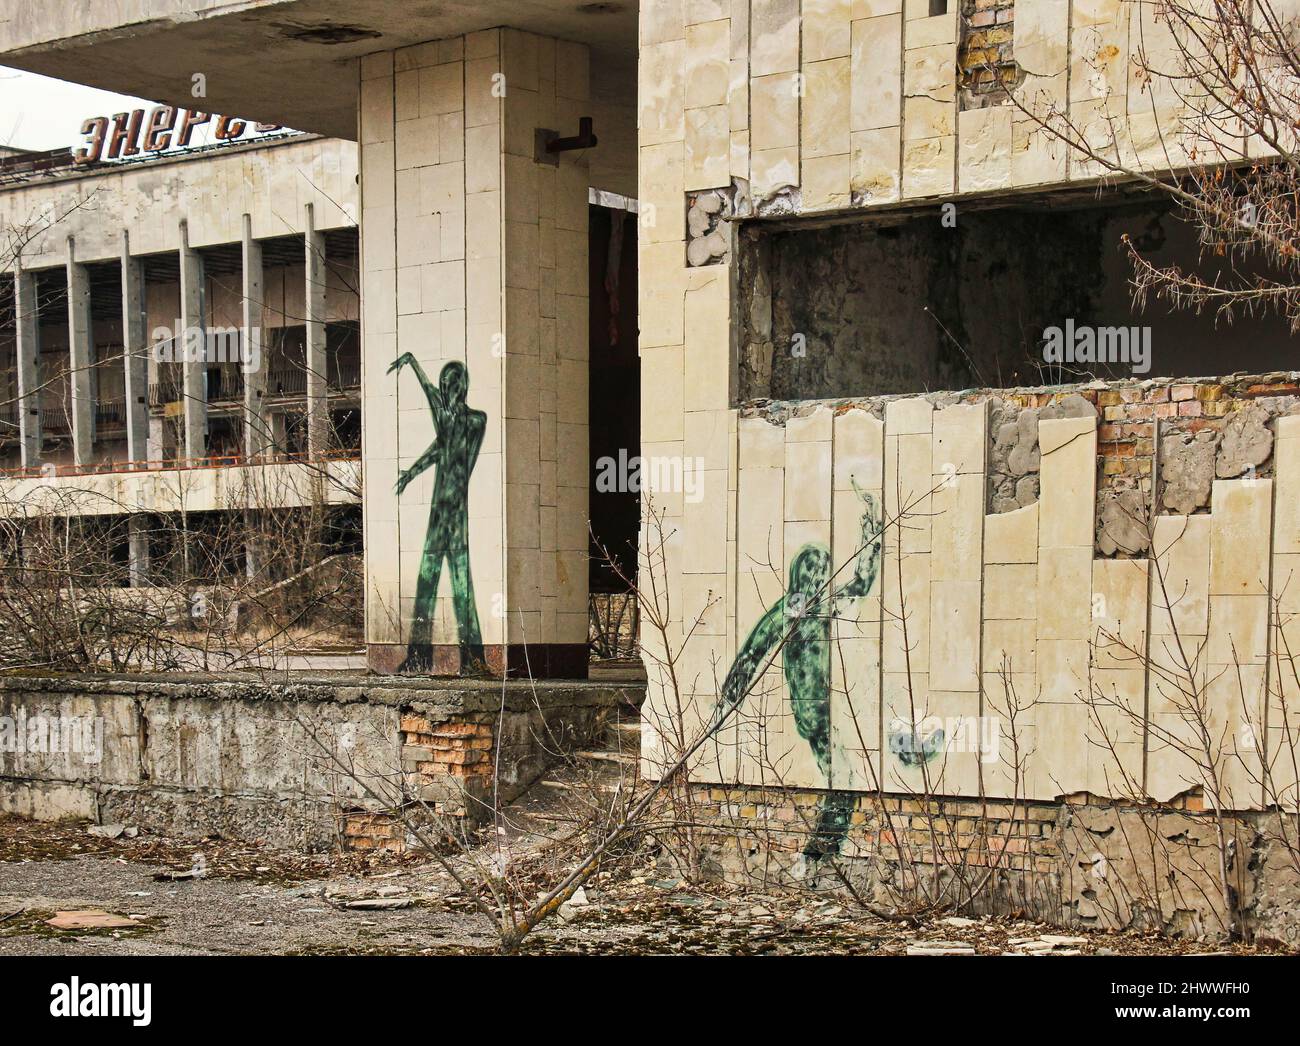 Uno sguardo inquietante a ciò che rimane delle strutture 'radioattive' della città fantasma di Pripyat dove si è verificato il famoso incidente nucleare di Chernobyl Foto Stock